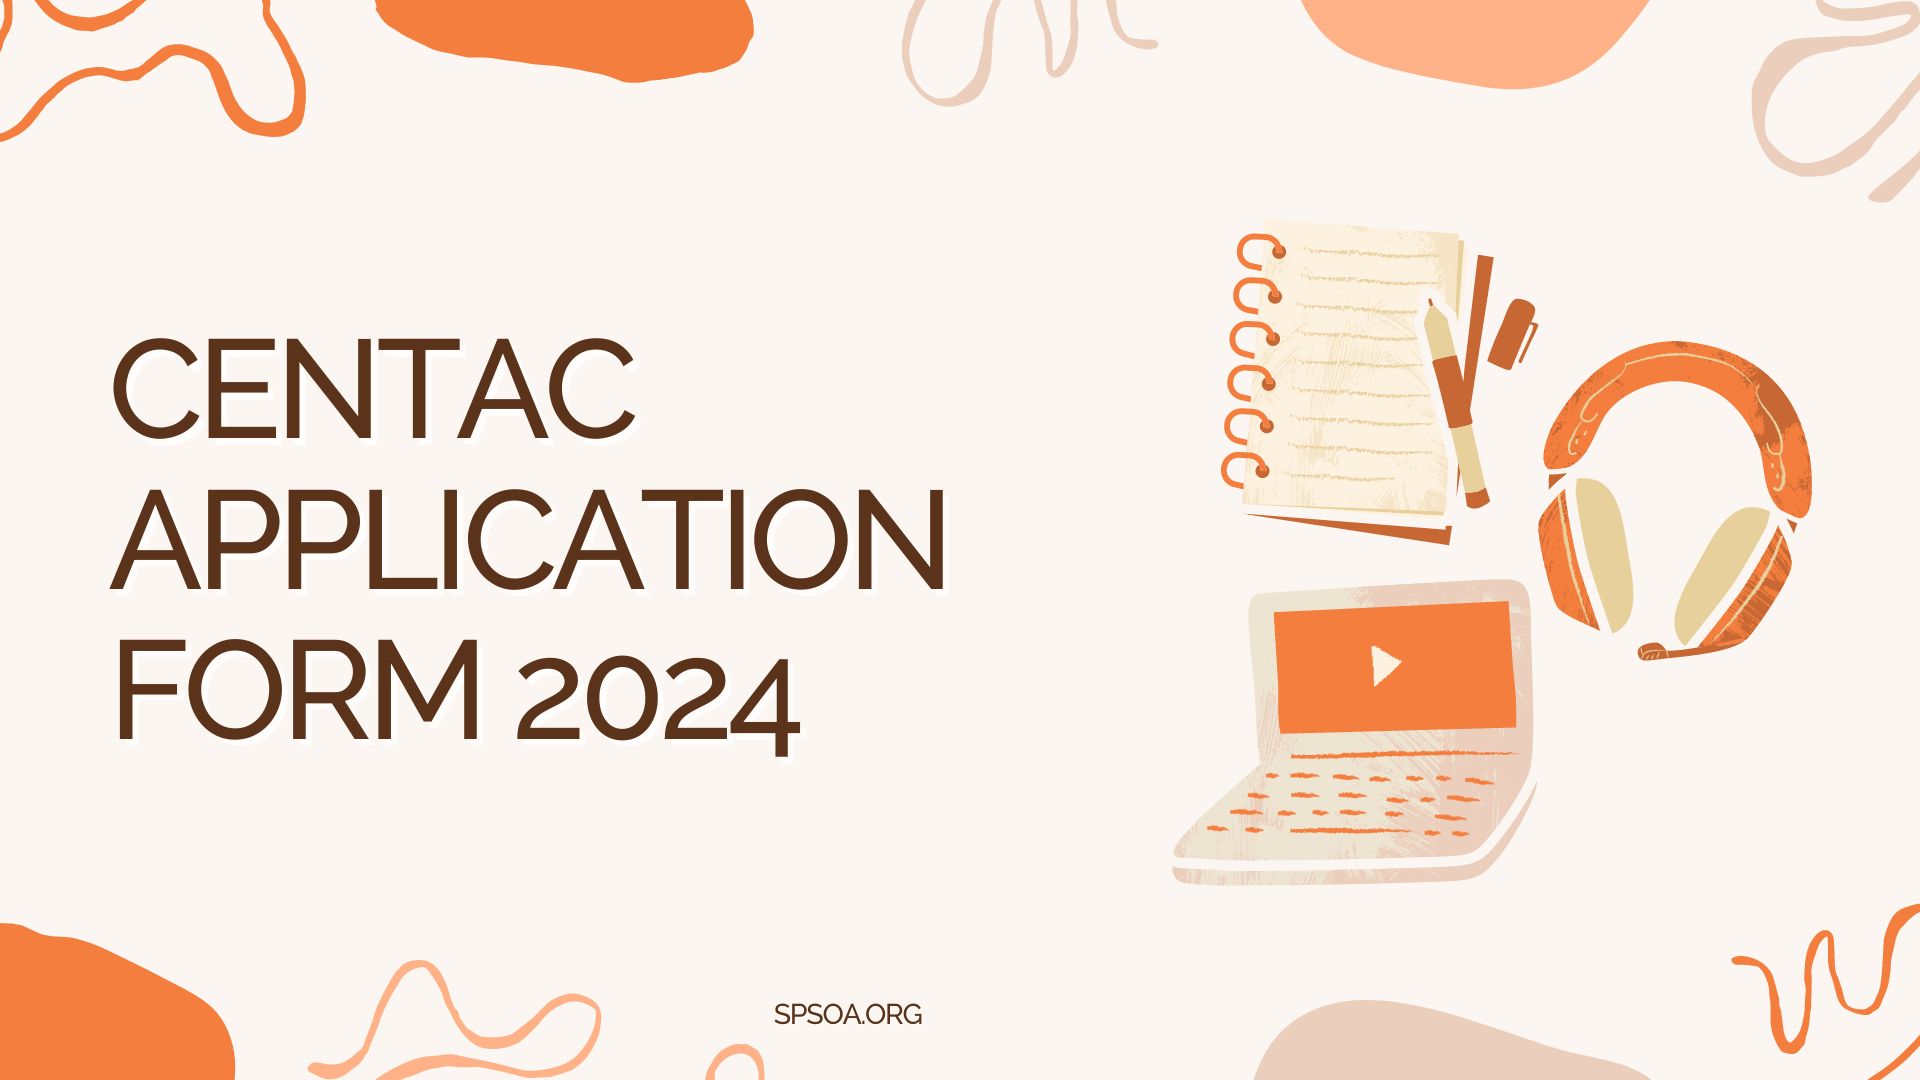 CENTAC Application Form 2024